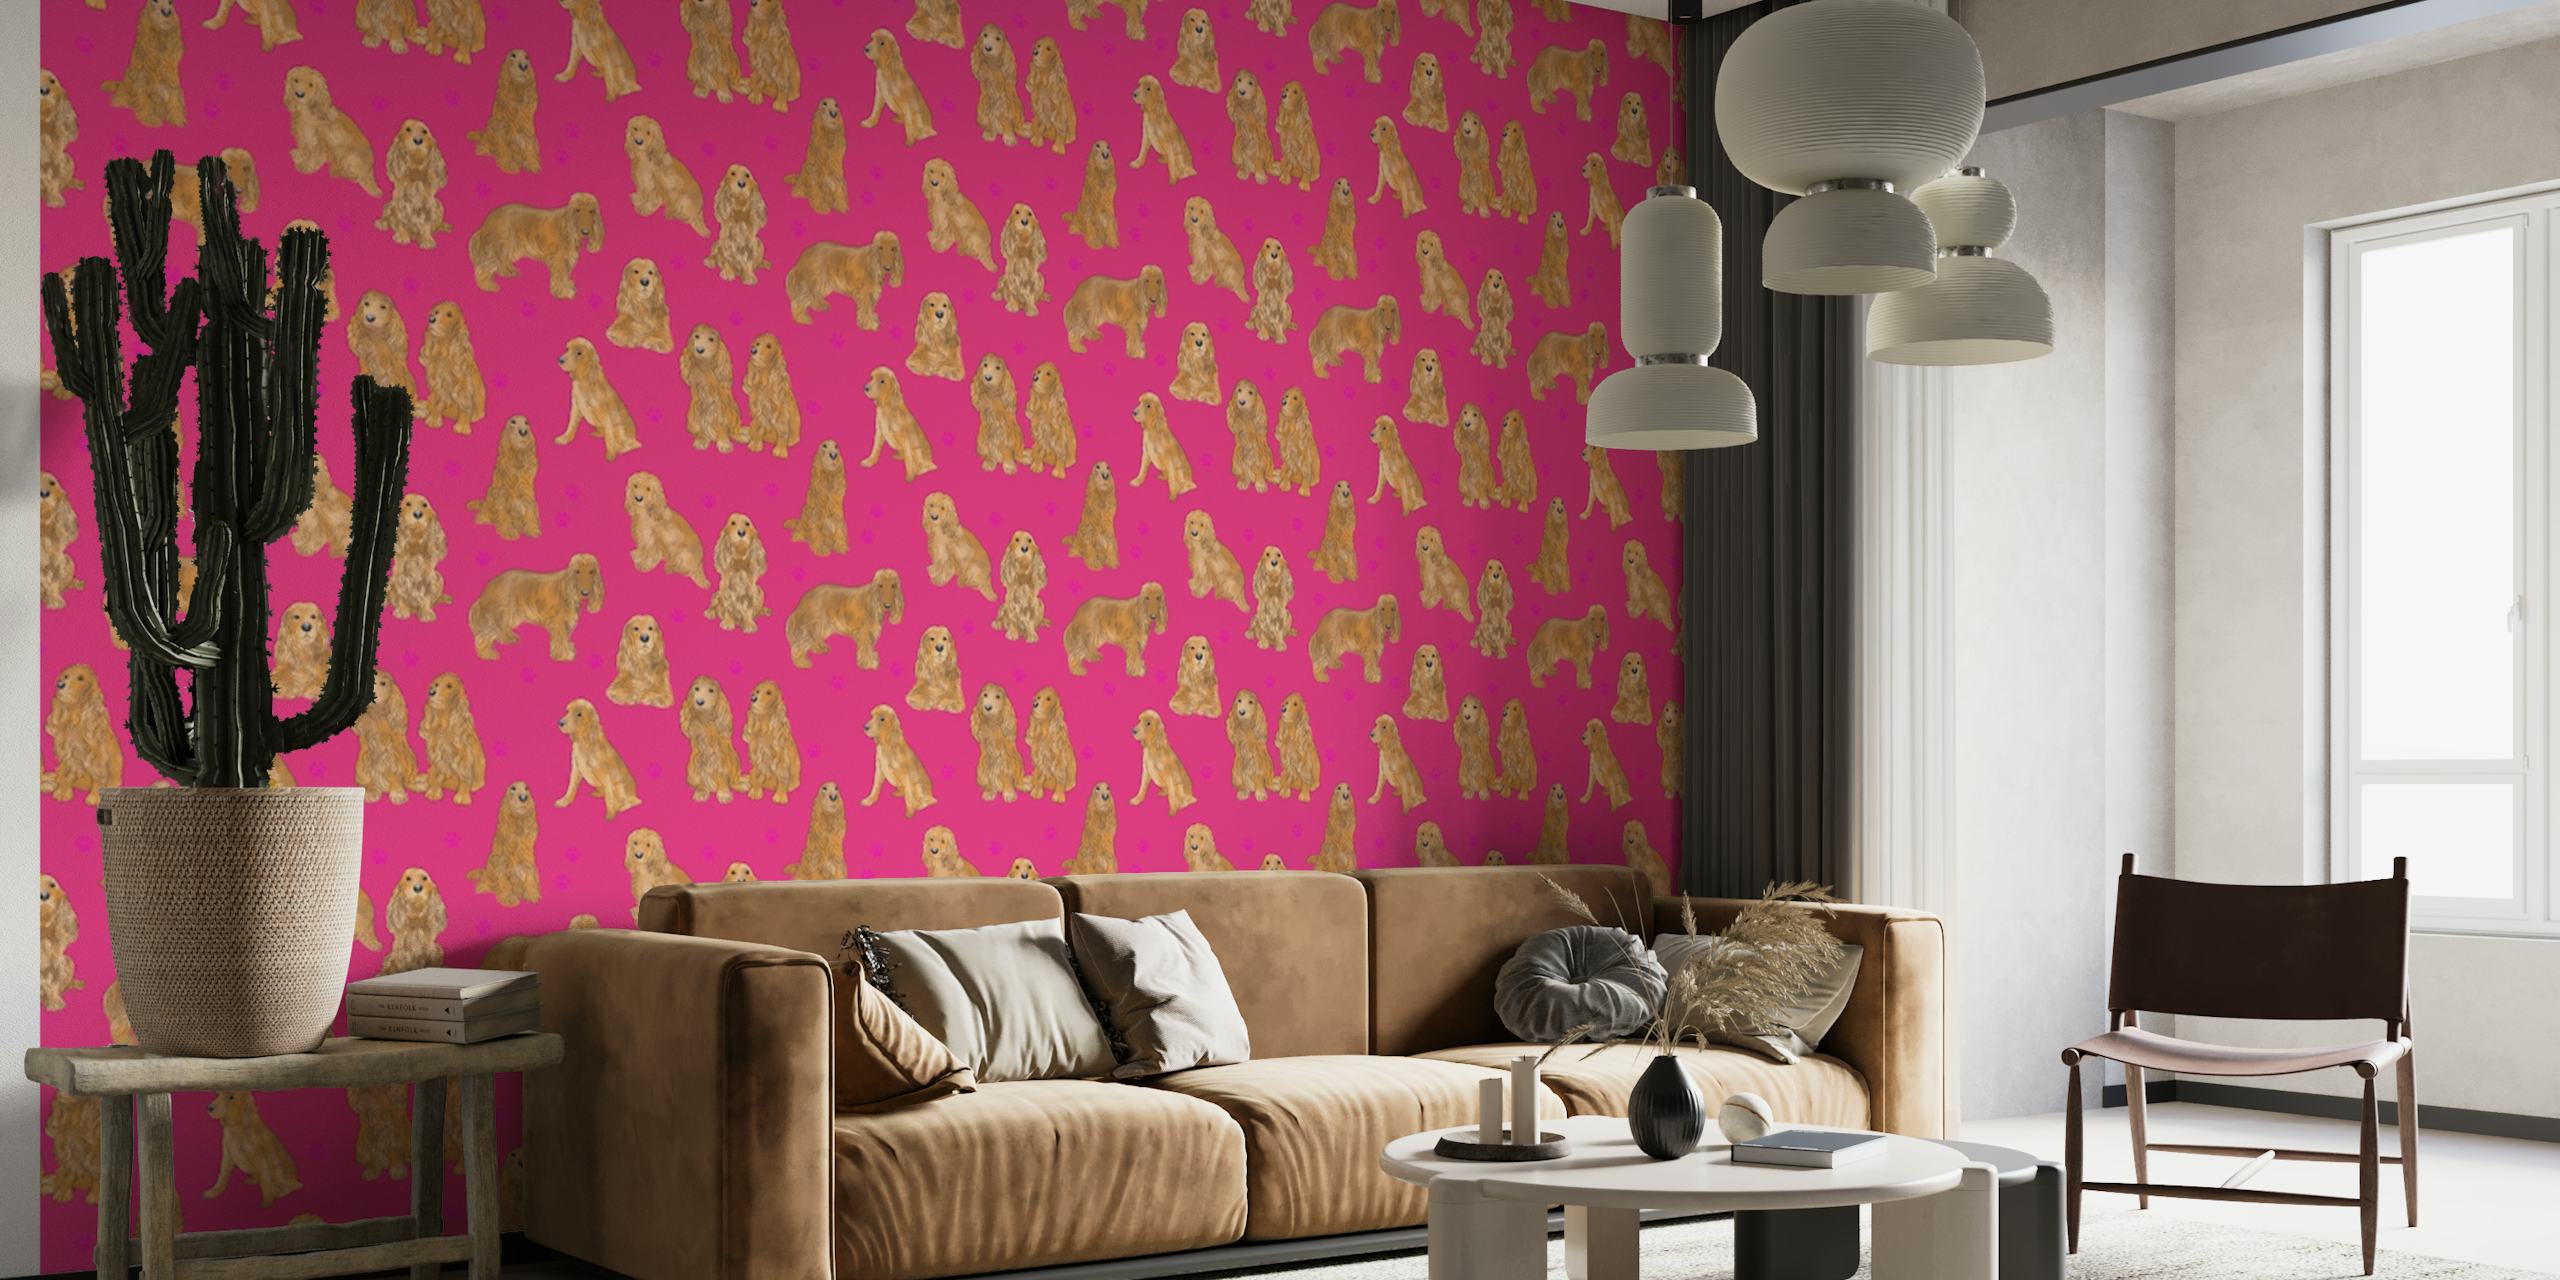 Fototapete mit Muster von Cocker Spaniel Hunden auf rosa Hintergrund